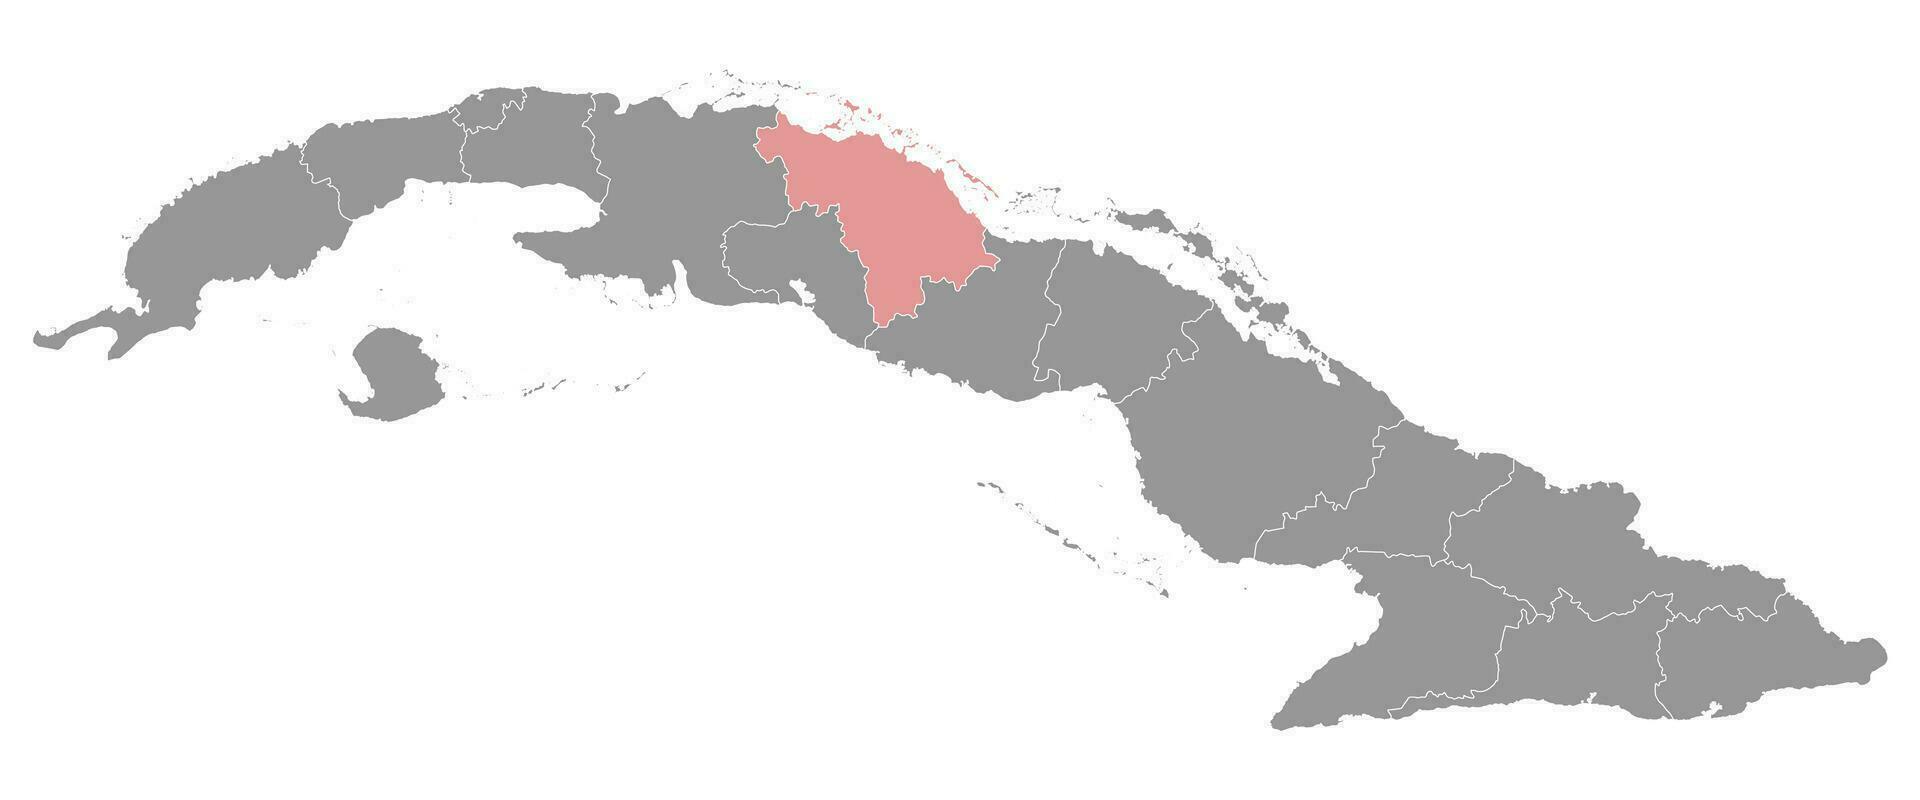 villa clara provins Karta, administrativ division av kuba. vektor illustration.